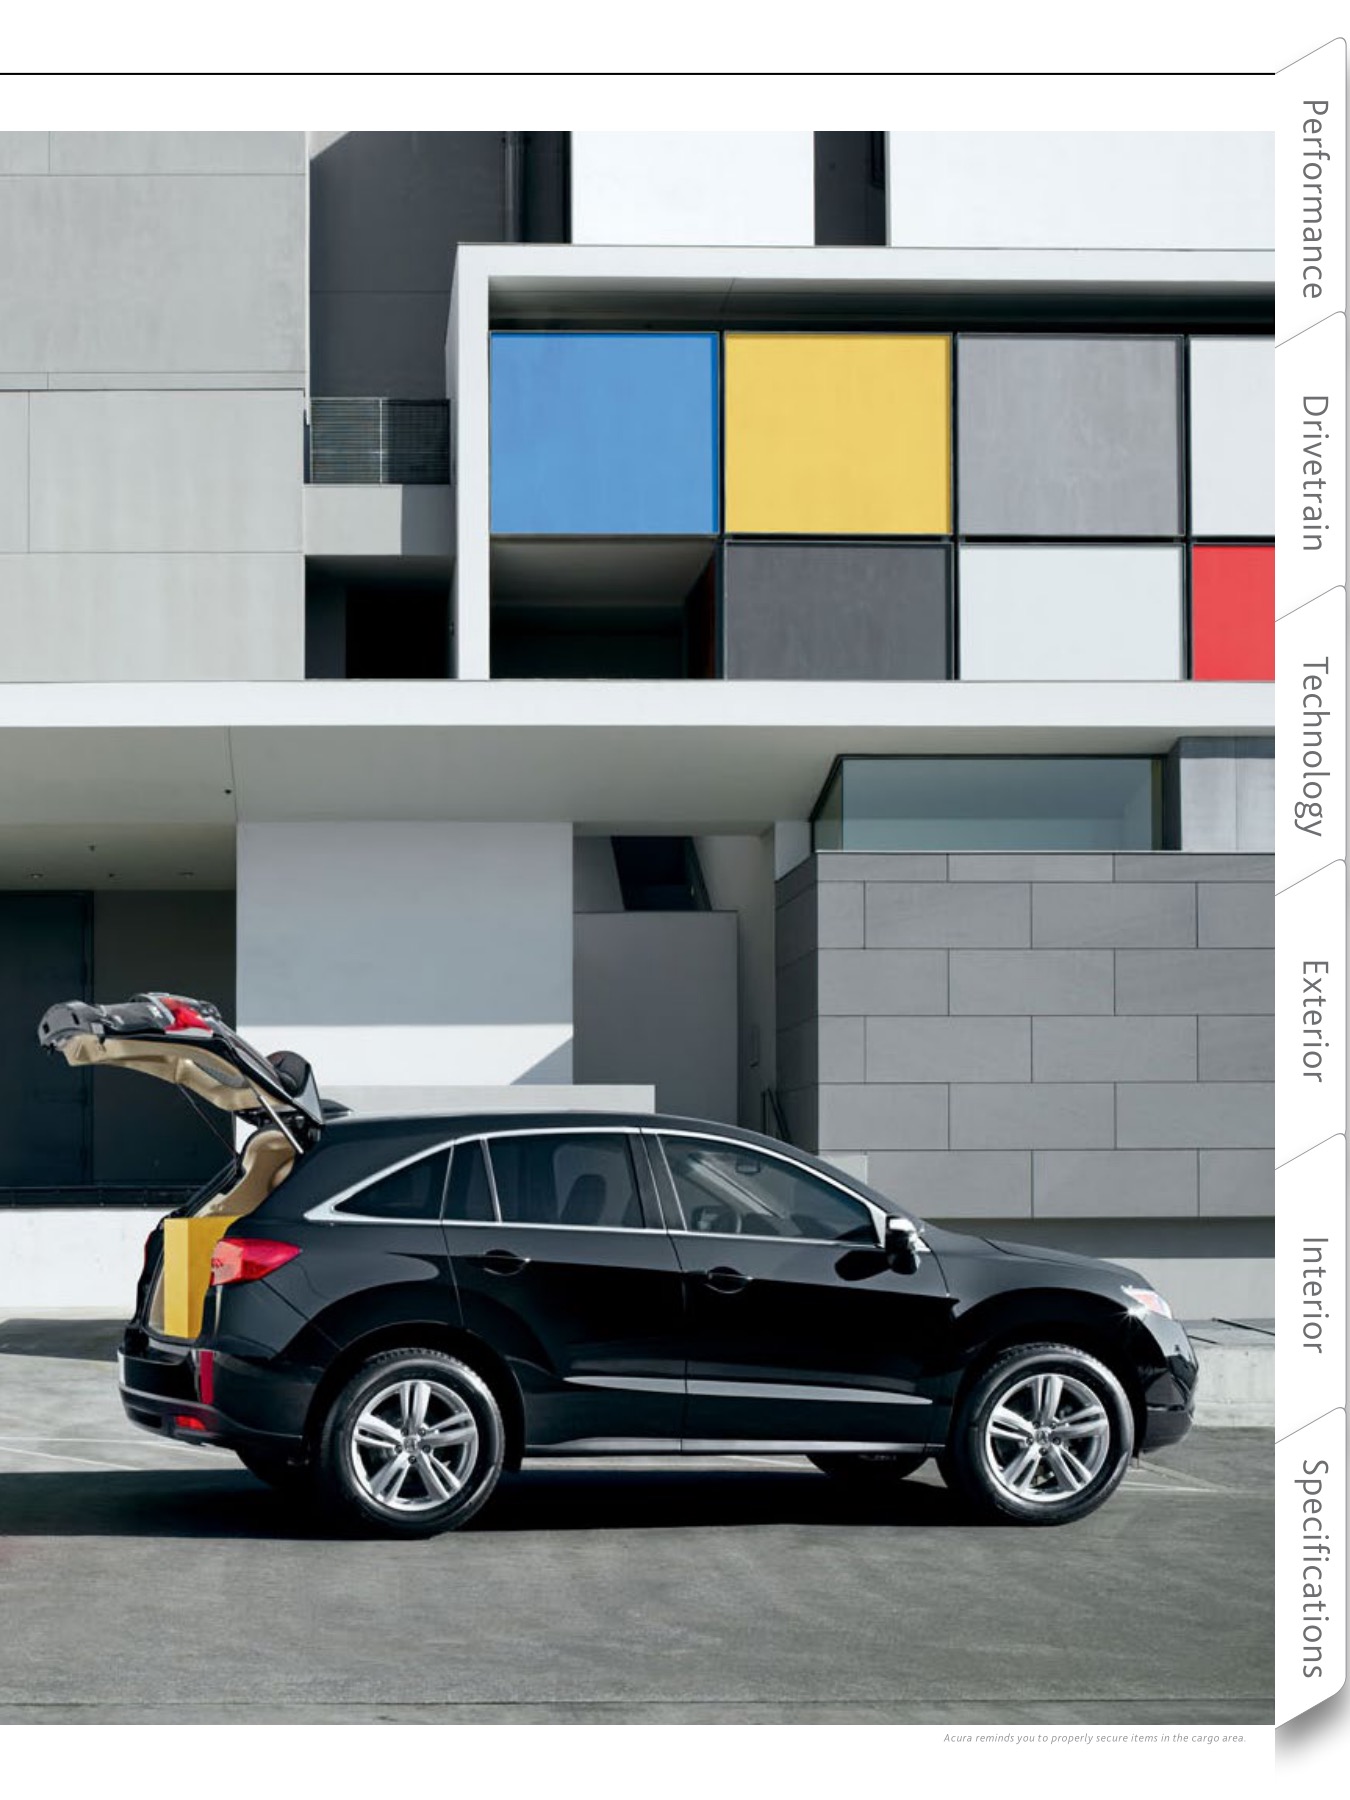 2014 Acura RDX Brochure Page 1